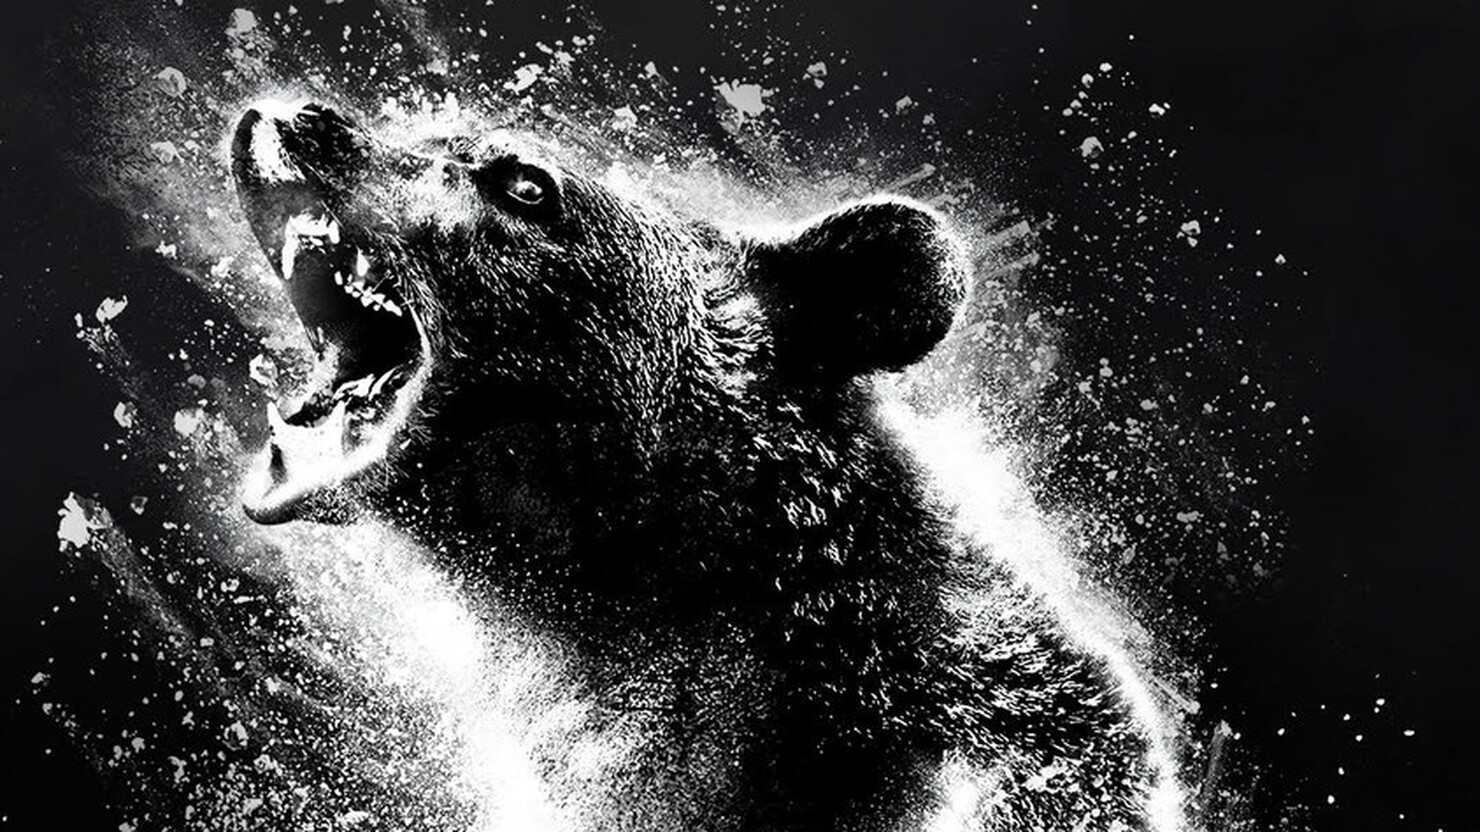 Медведь  и кокаин на постере триллера "Кокаиновый медведь"